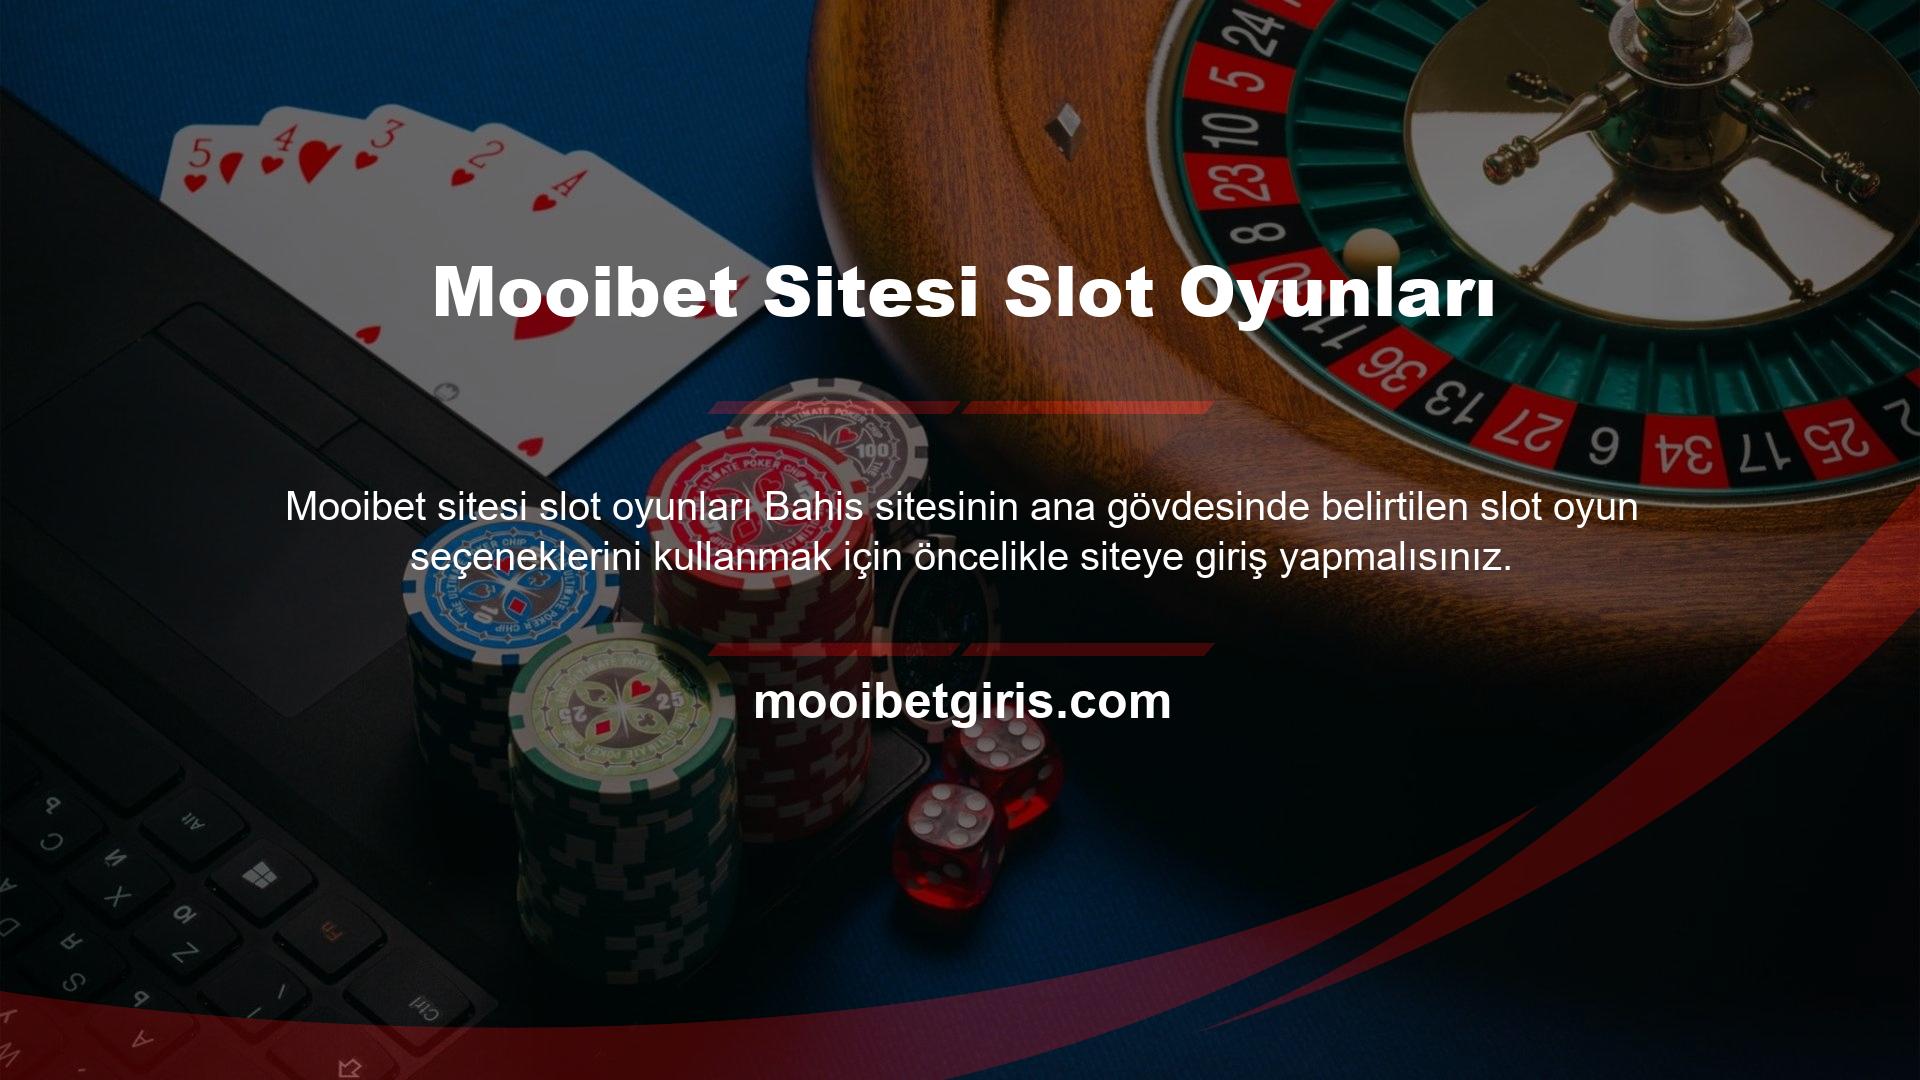 Casino sitesi yapısında tanımlanan slot oyun alternatifleri iyi bilinmektedir